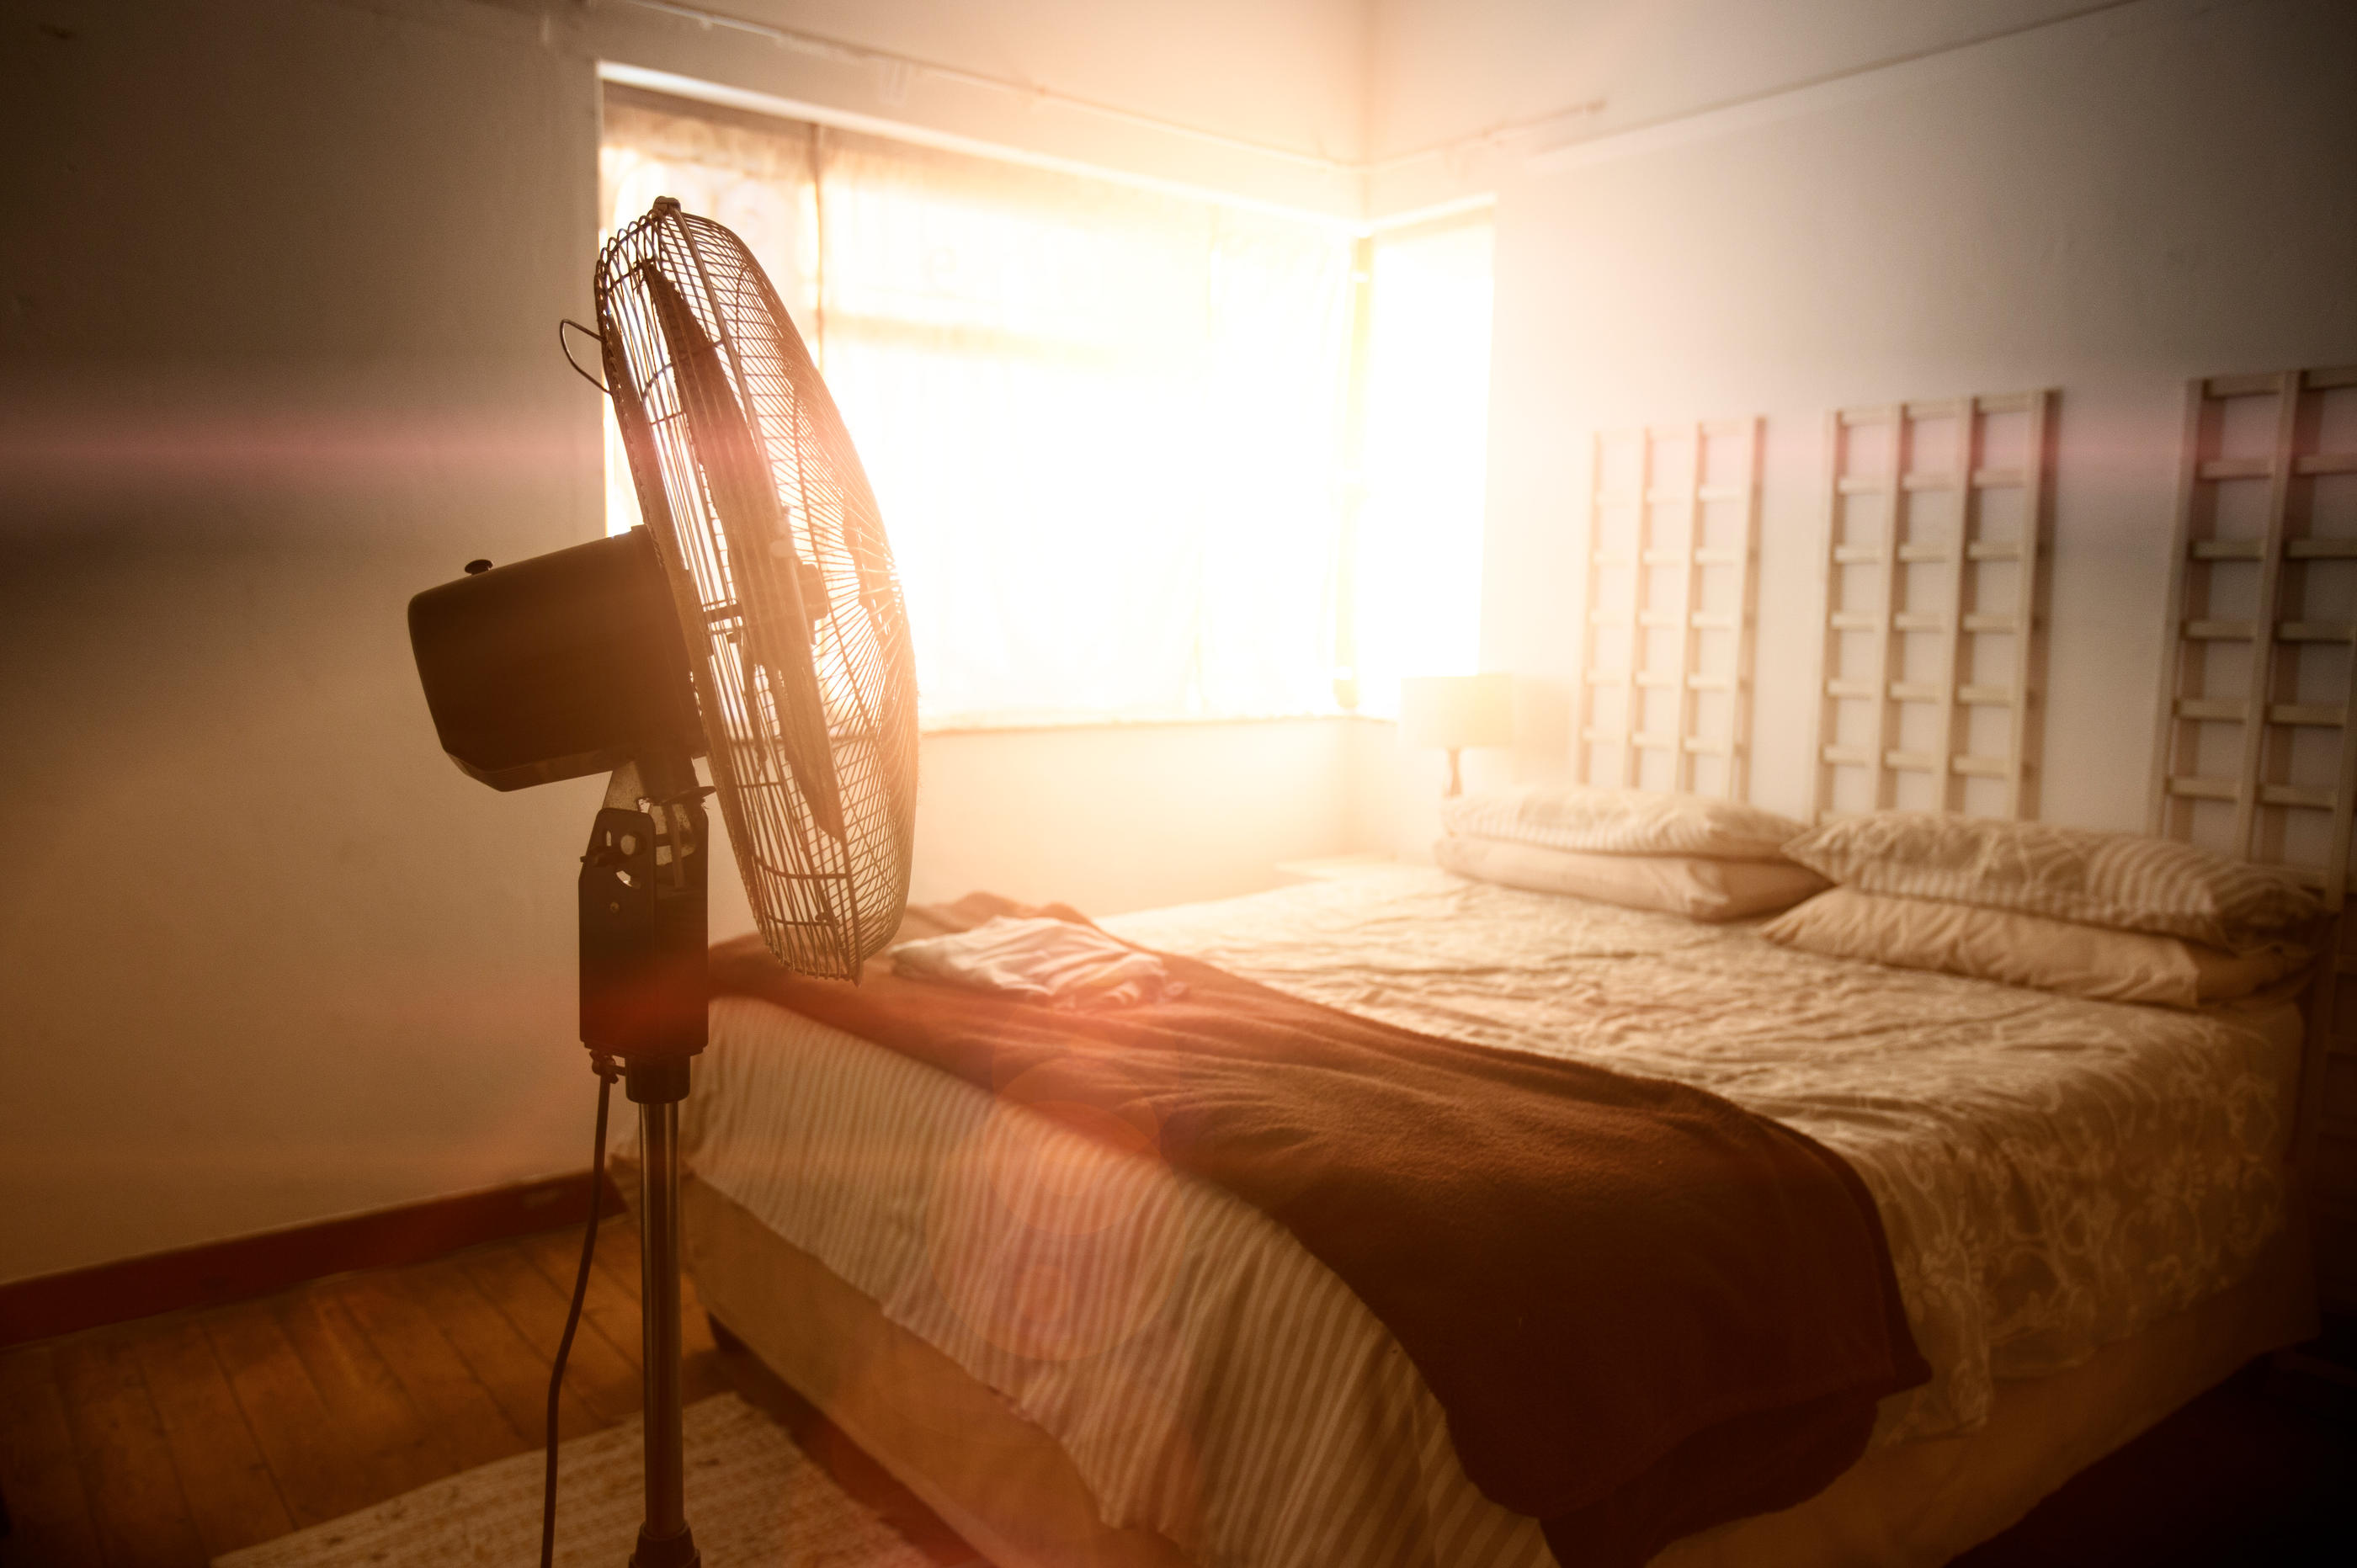 Selon une étude OpinionWay, près de 50 % des Français habitant en appartement souffrent de la chaleur en été, avec un pic de 54 % pour les 18-24 ans. (Illustration) Istock